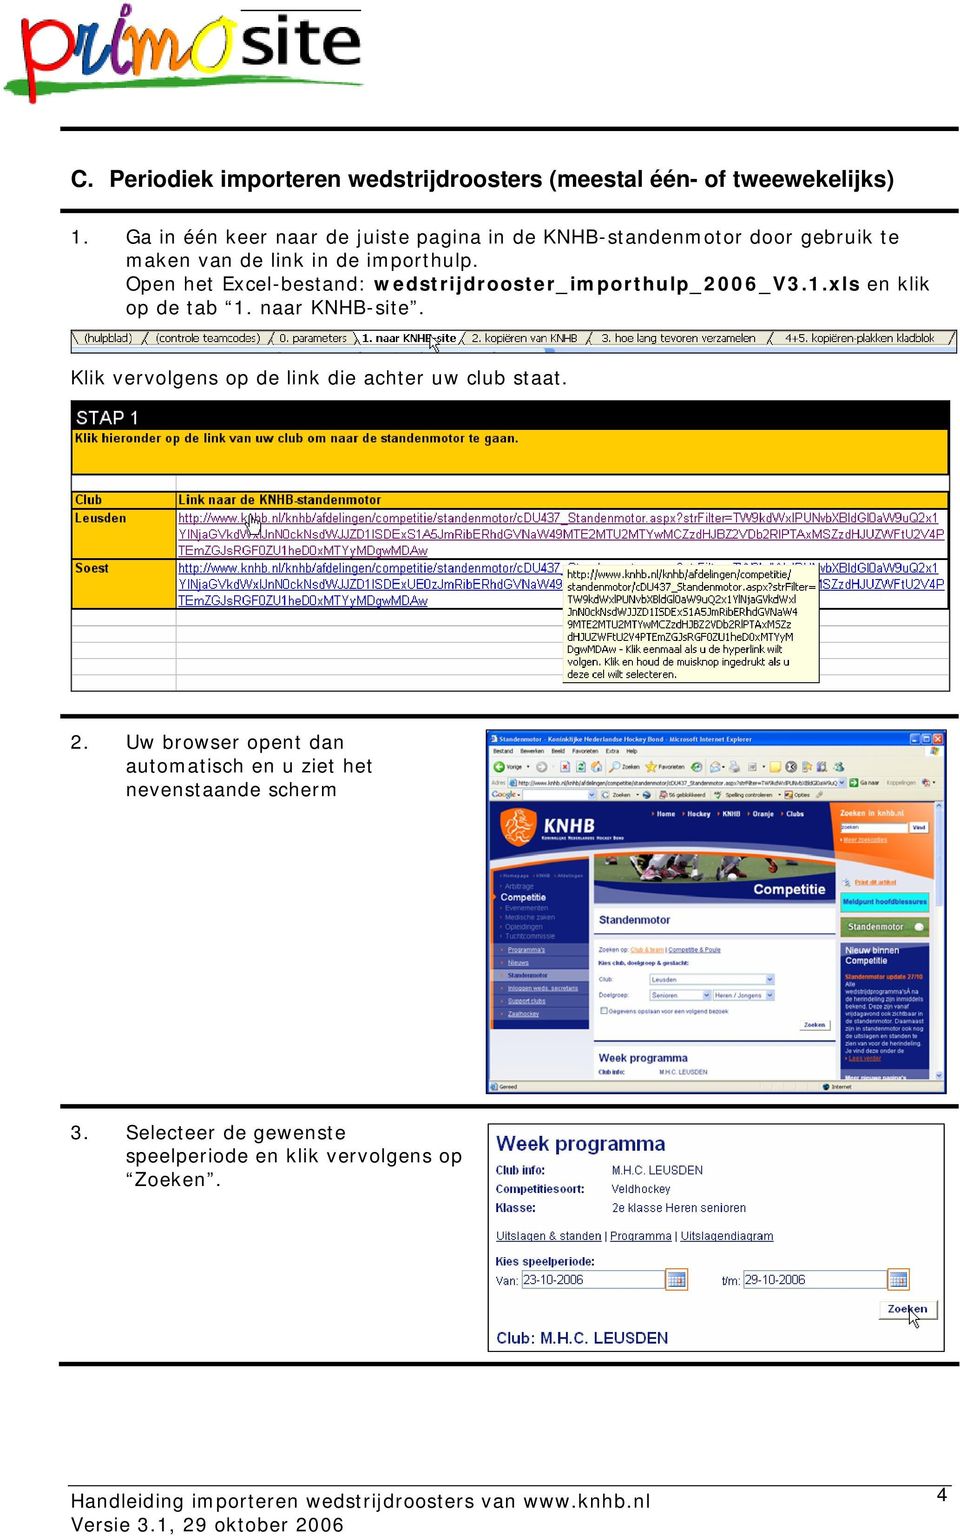 Open het Excel-bestand: wedstrijdrooster_importhulp_2006_v3.1.xls en klik op de tab 1. naar KNHB-site.